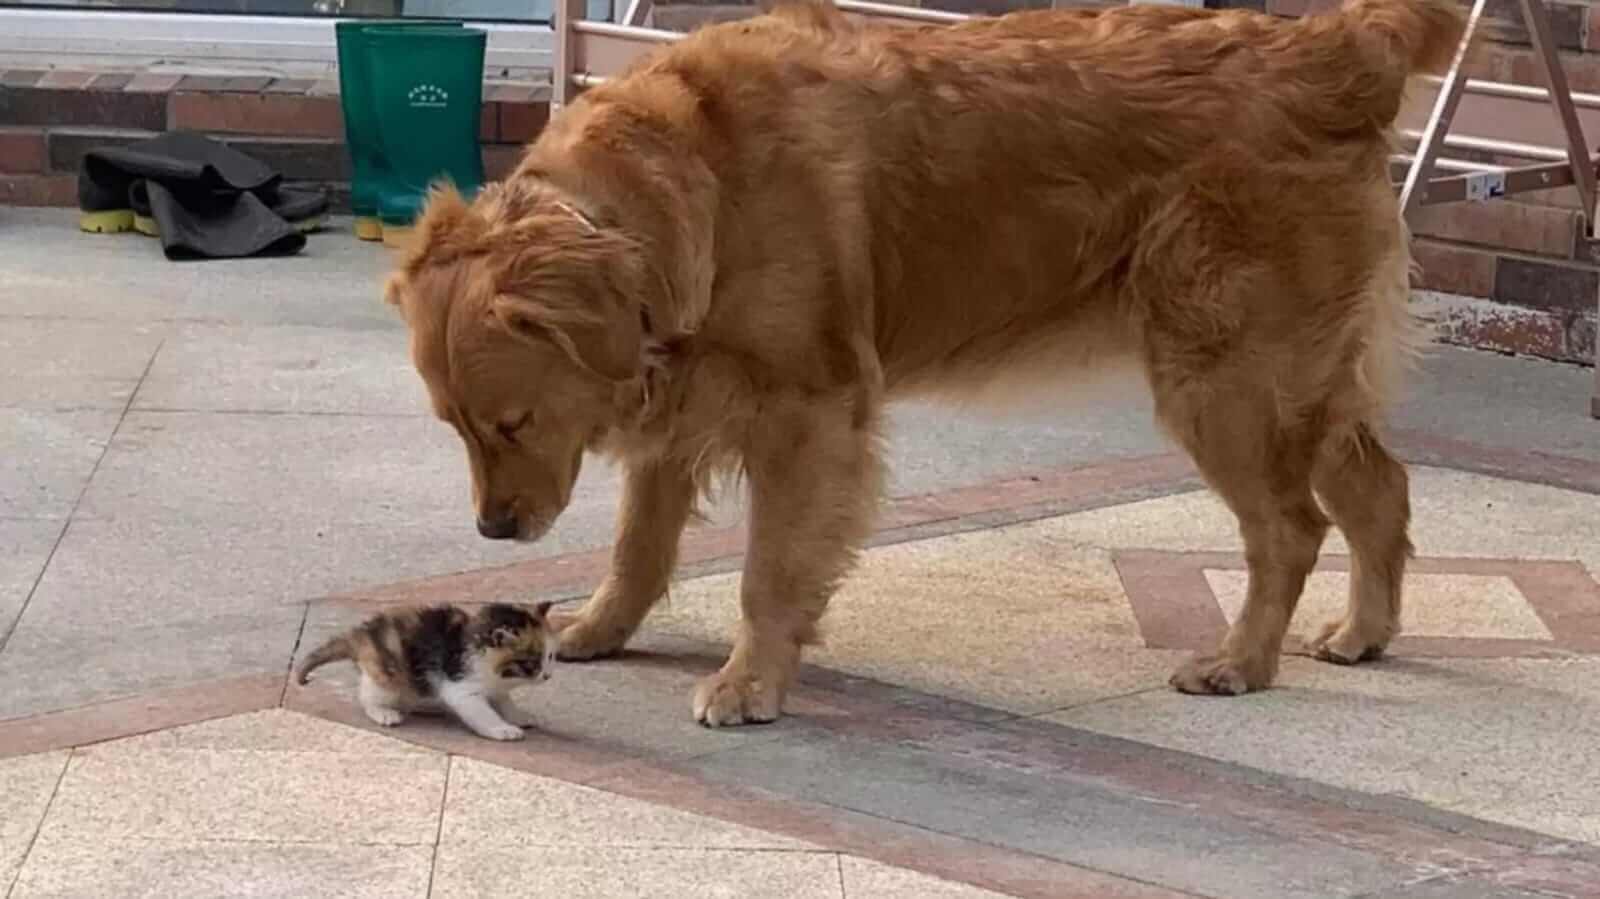 Cachorro Golden Retriever e gatinho